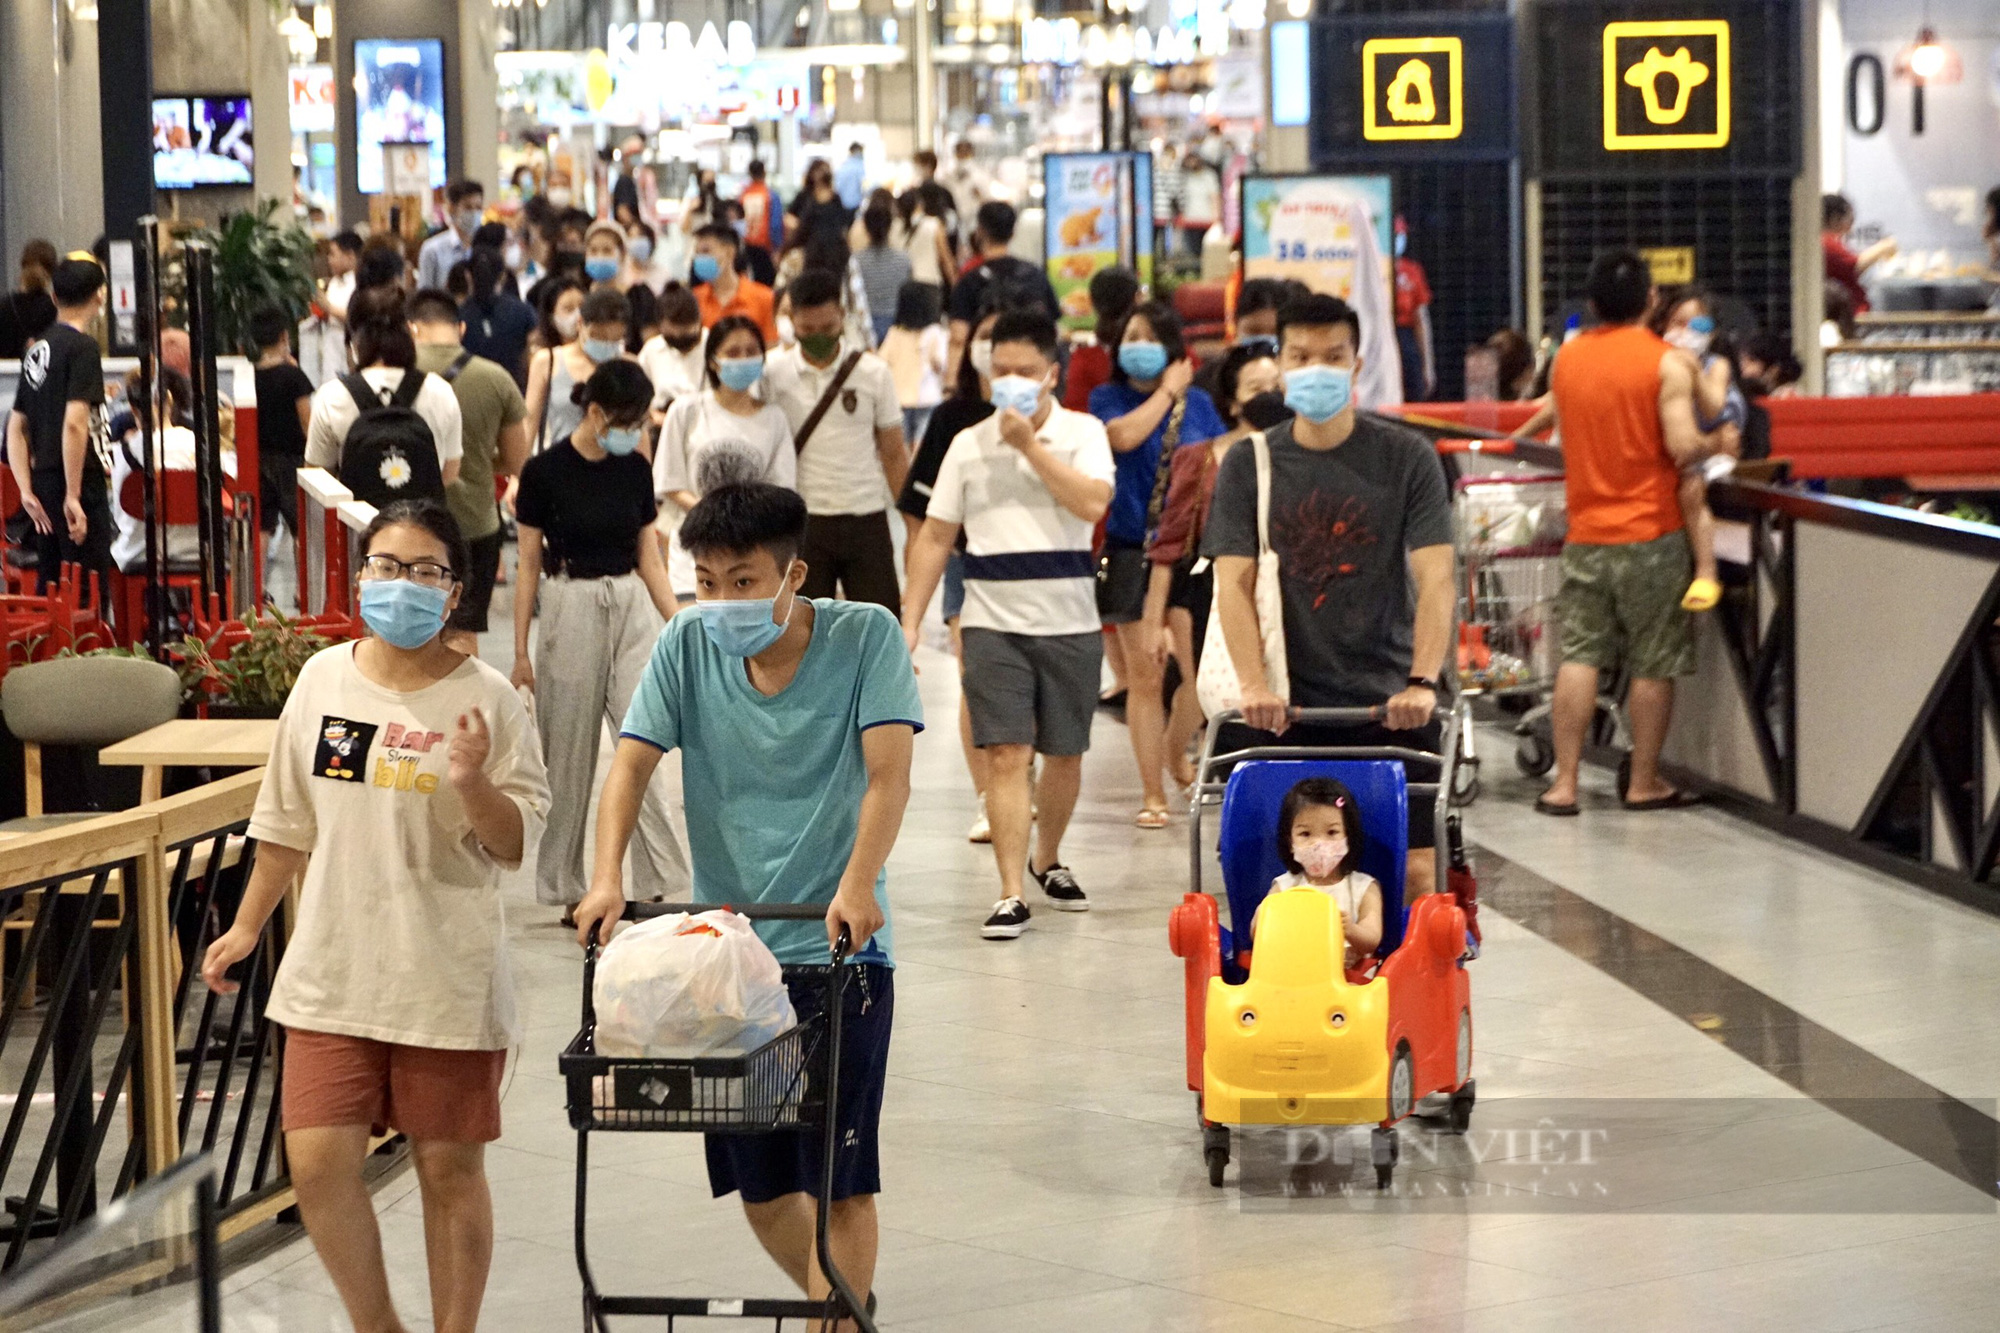 Hà Nội: Trung tâm thương mại, siêu thị vẫn đông nghịt người bất chấp dịch COVID-19 - Ảnh 4.